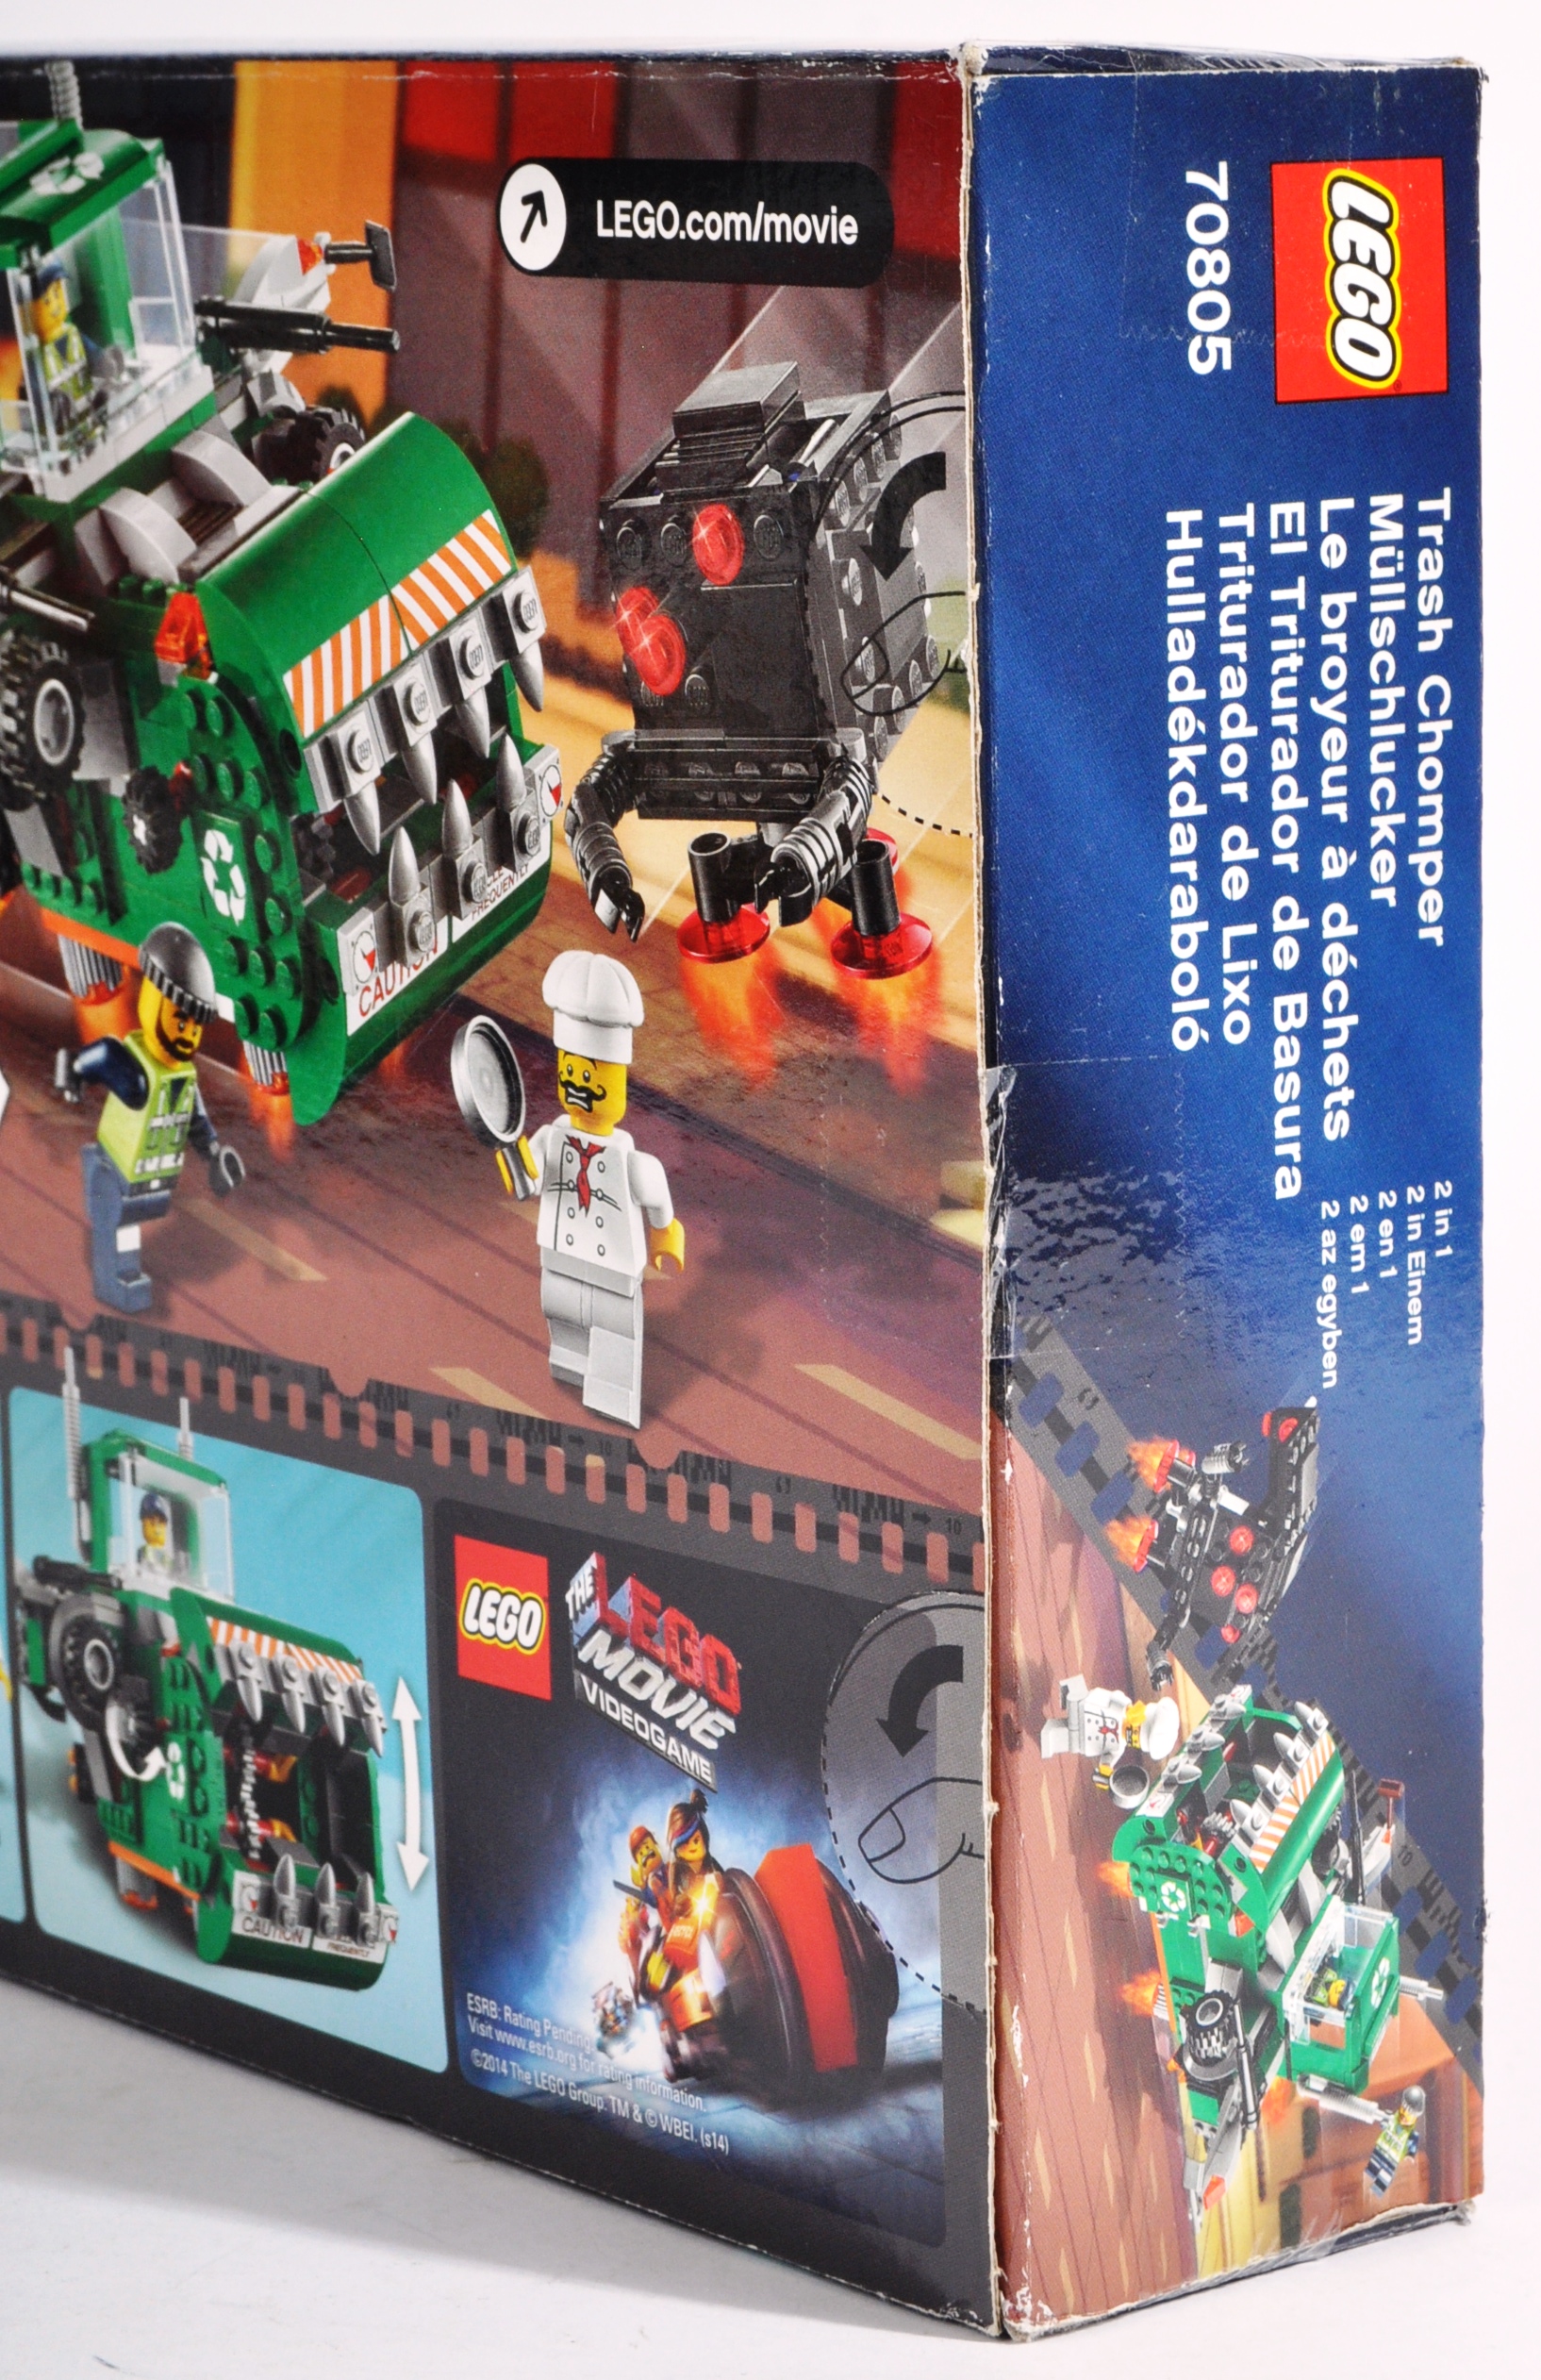 LEGO SETS - LEGO MOVIE AND LEGO STUDIOS - Image 4 of 13